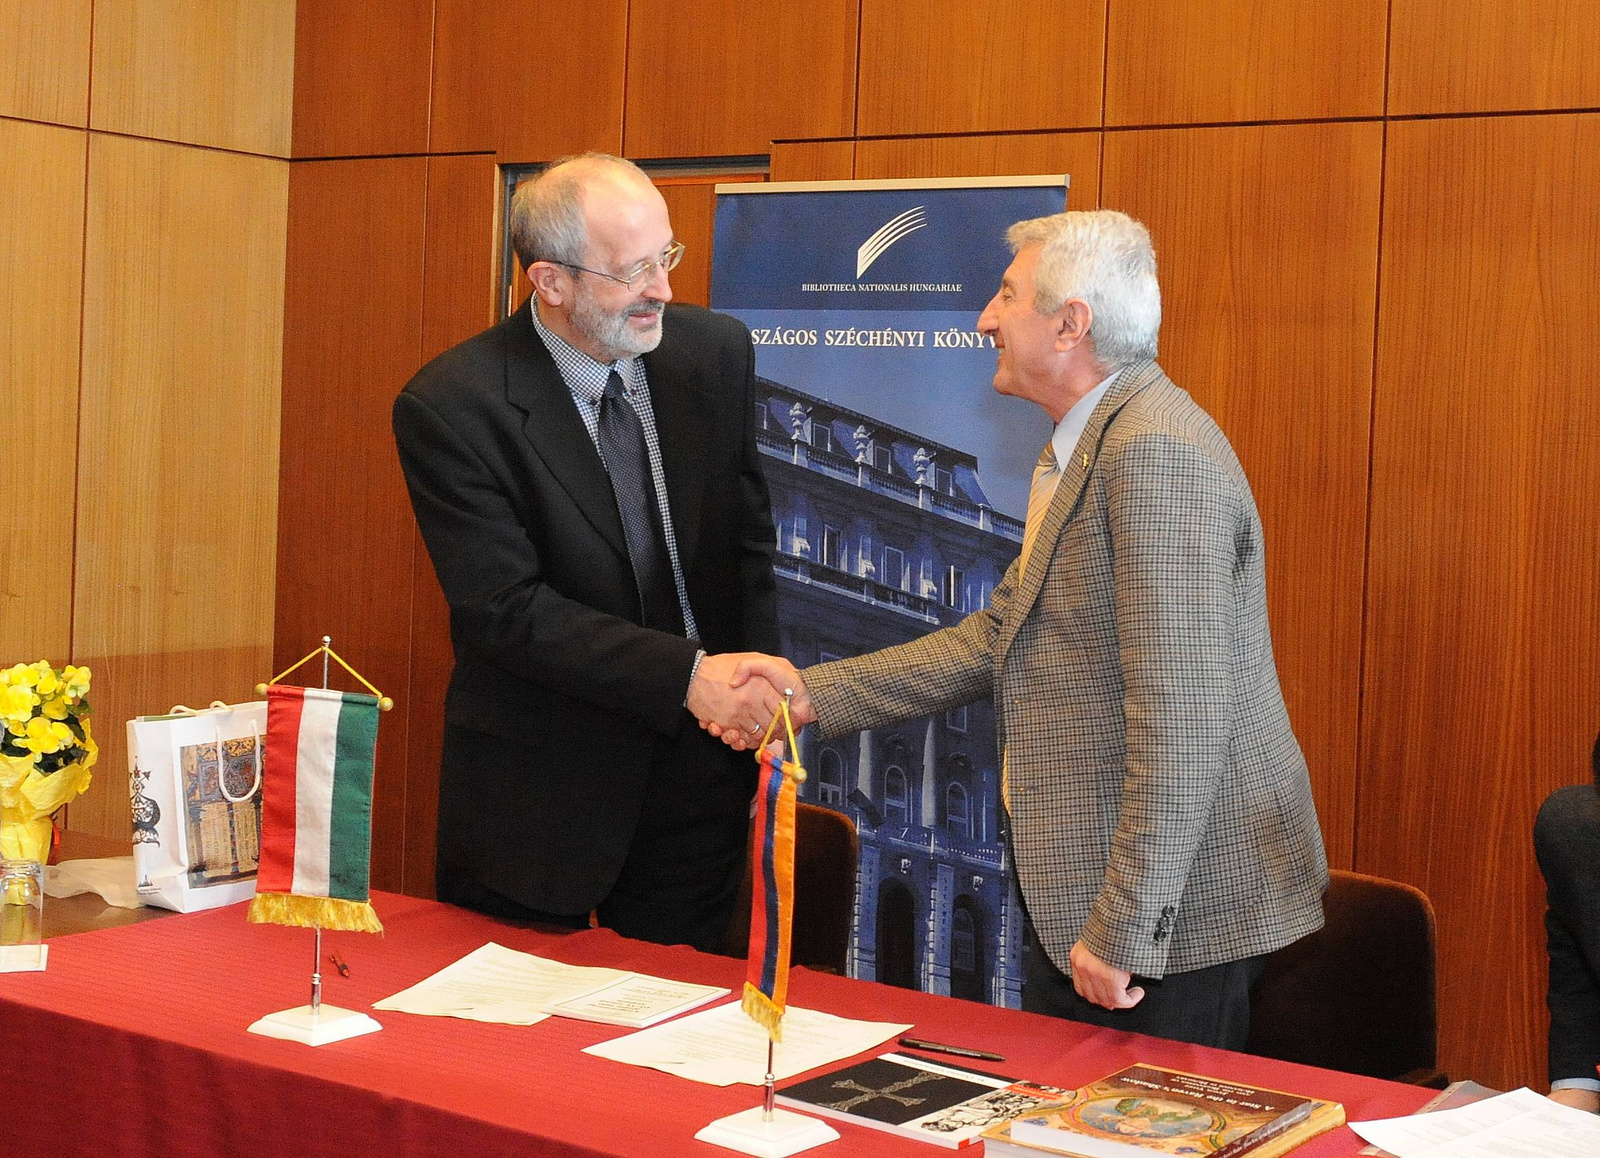 Együttműködés az örmény nemzeti könyvtárral